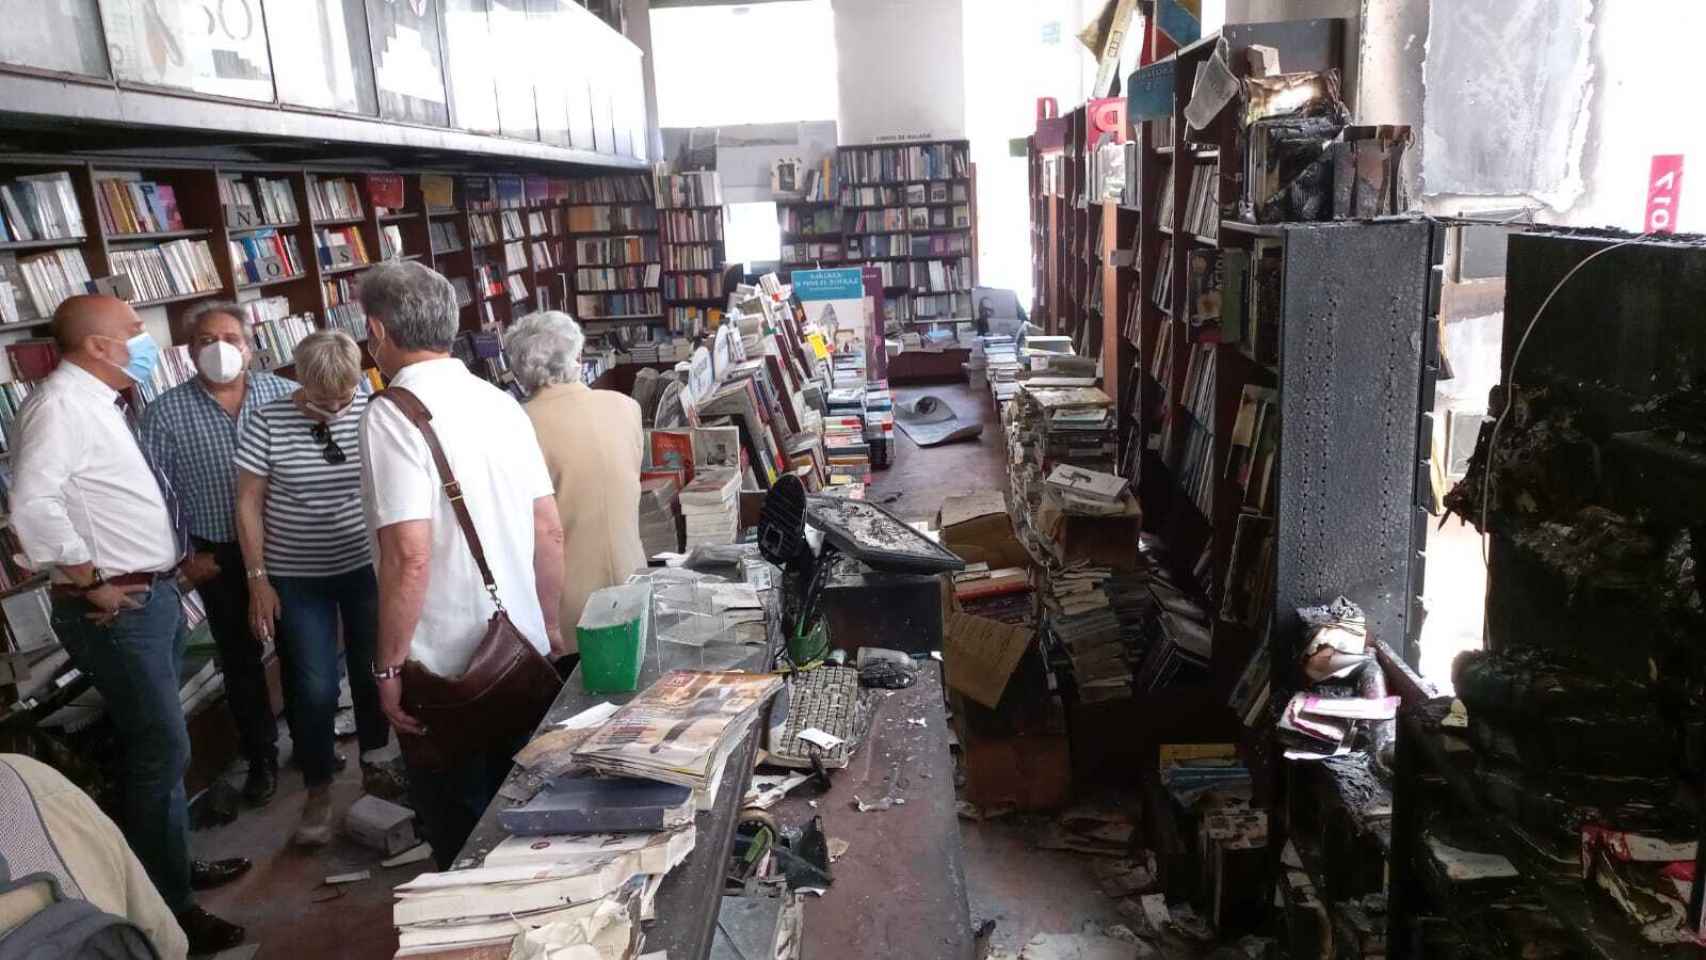 Visita a la Librería Proteo de Málaga.